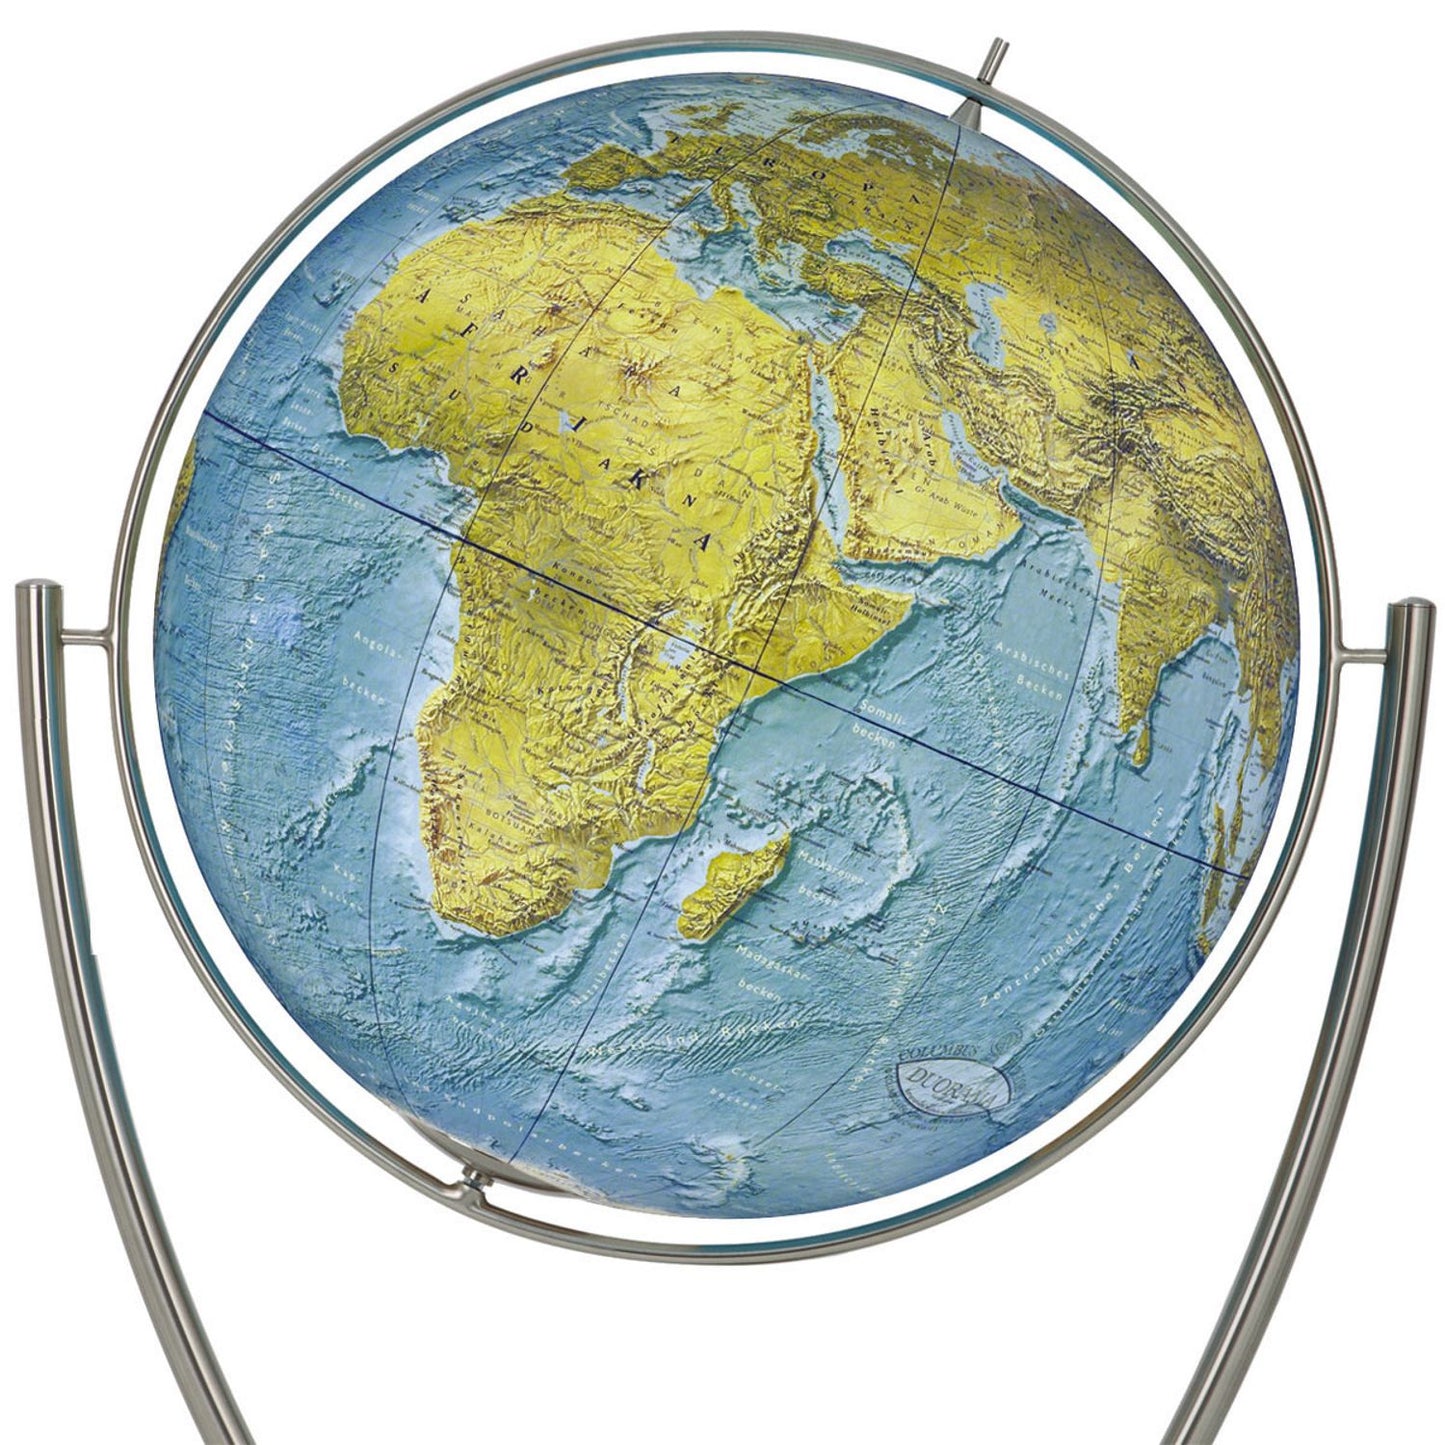 Globe sur pied Columbus Magnum DUORAMA avec pied à fourche en acier inoxydable, jusqu'à D 100 cm